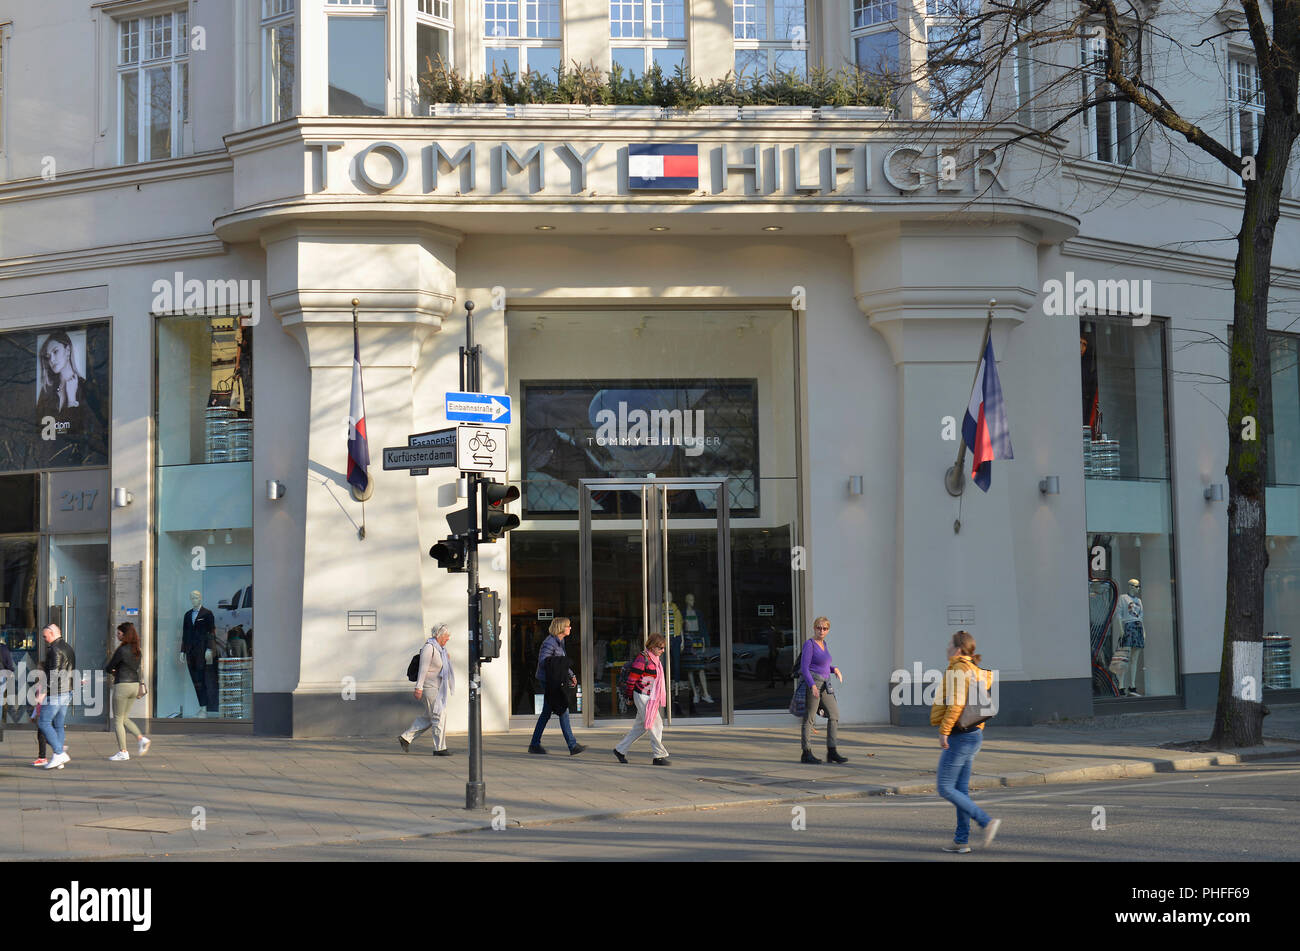 Tommy Hilfiger, Kurfürstendamm, Charlottenburg, Berlin, Deutschland  Stockfotografie - Alamy